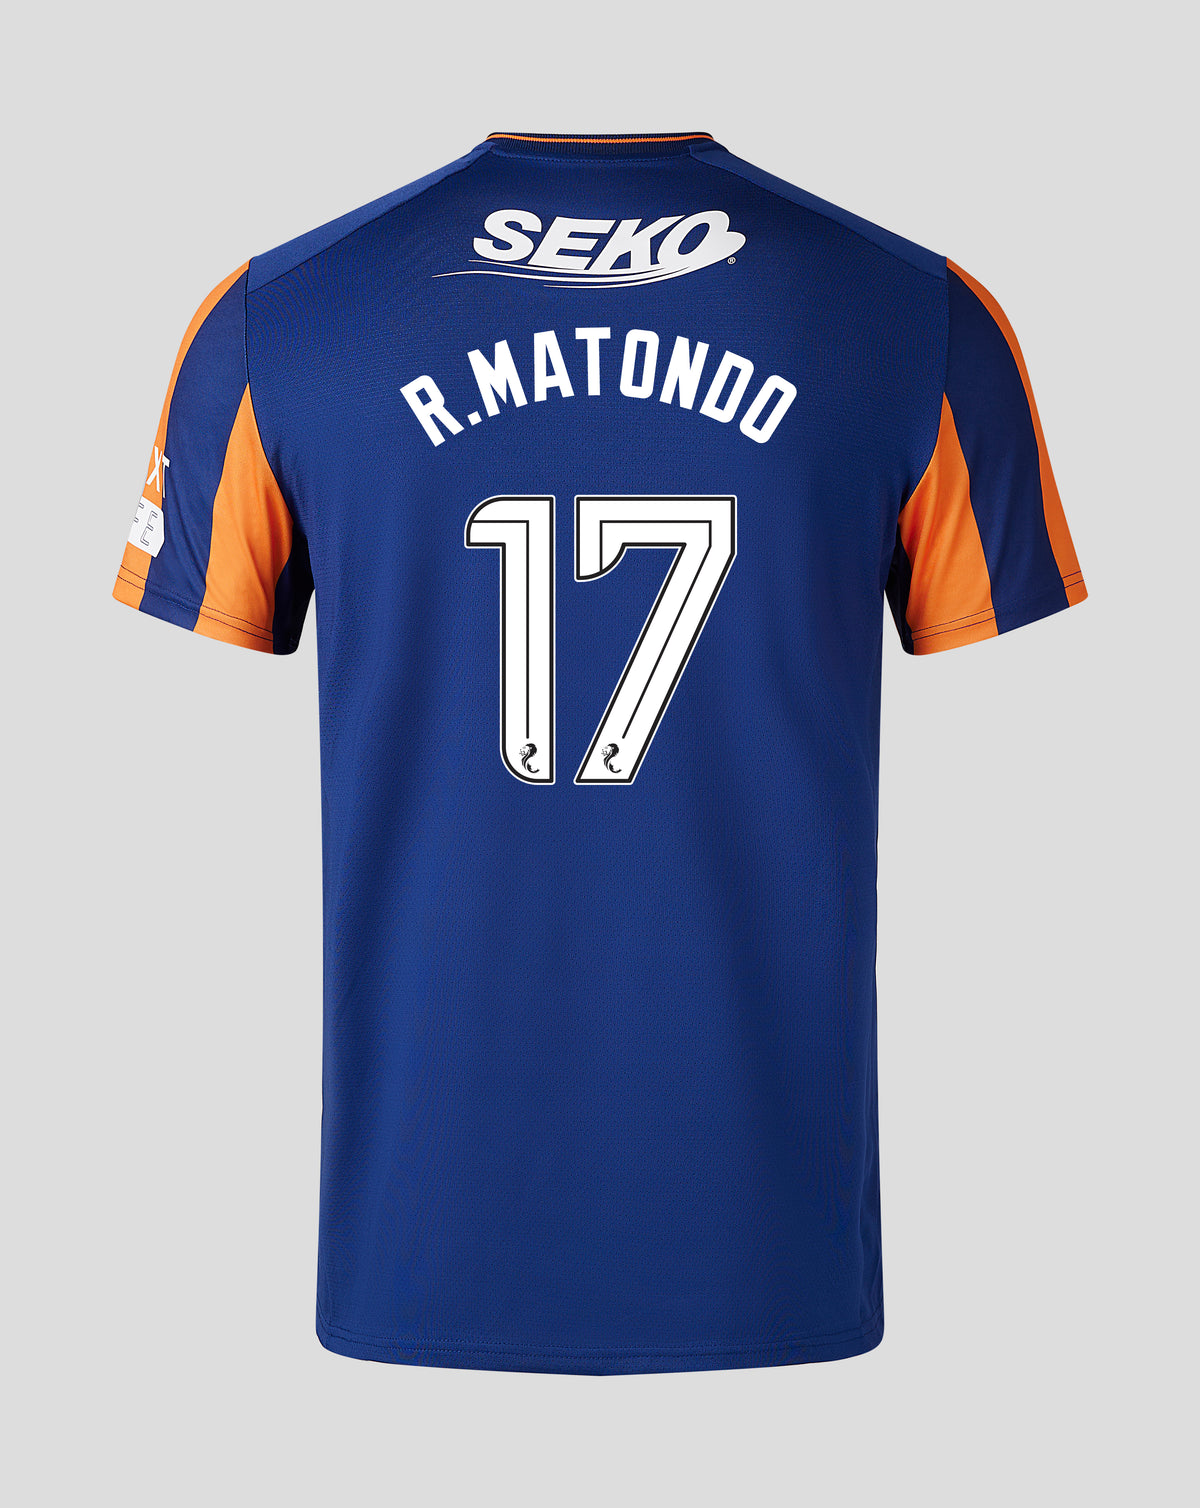 R.Matondo - Third Kit